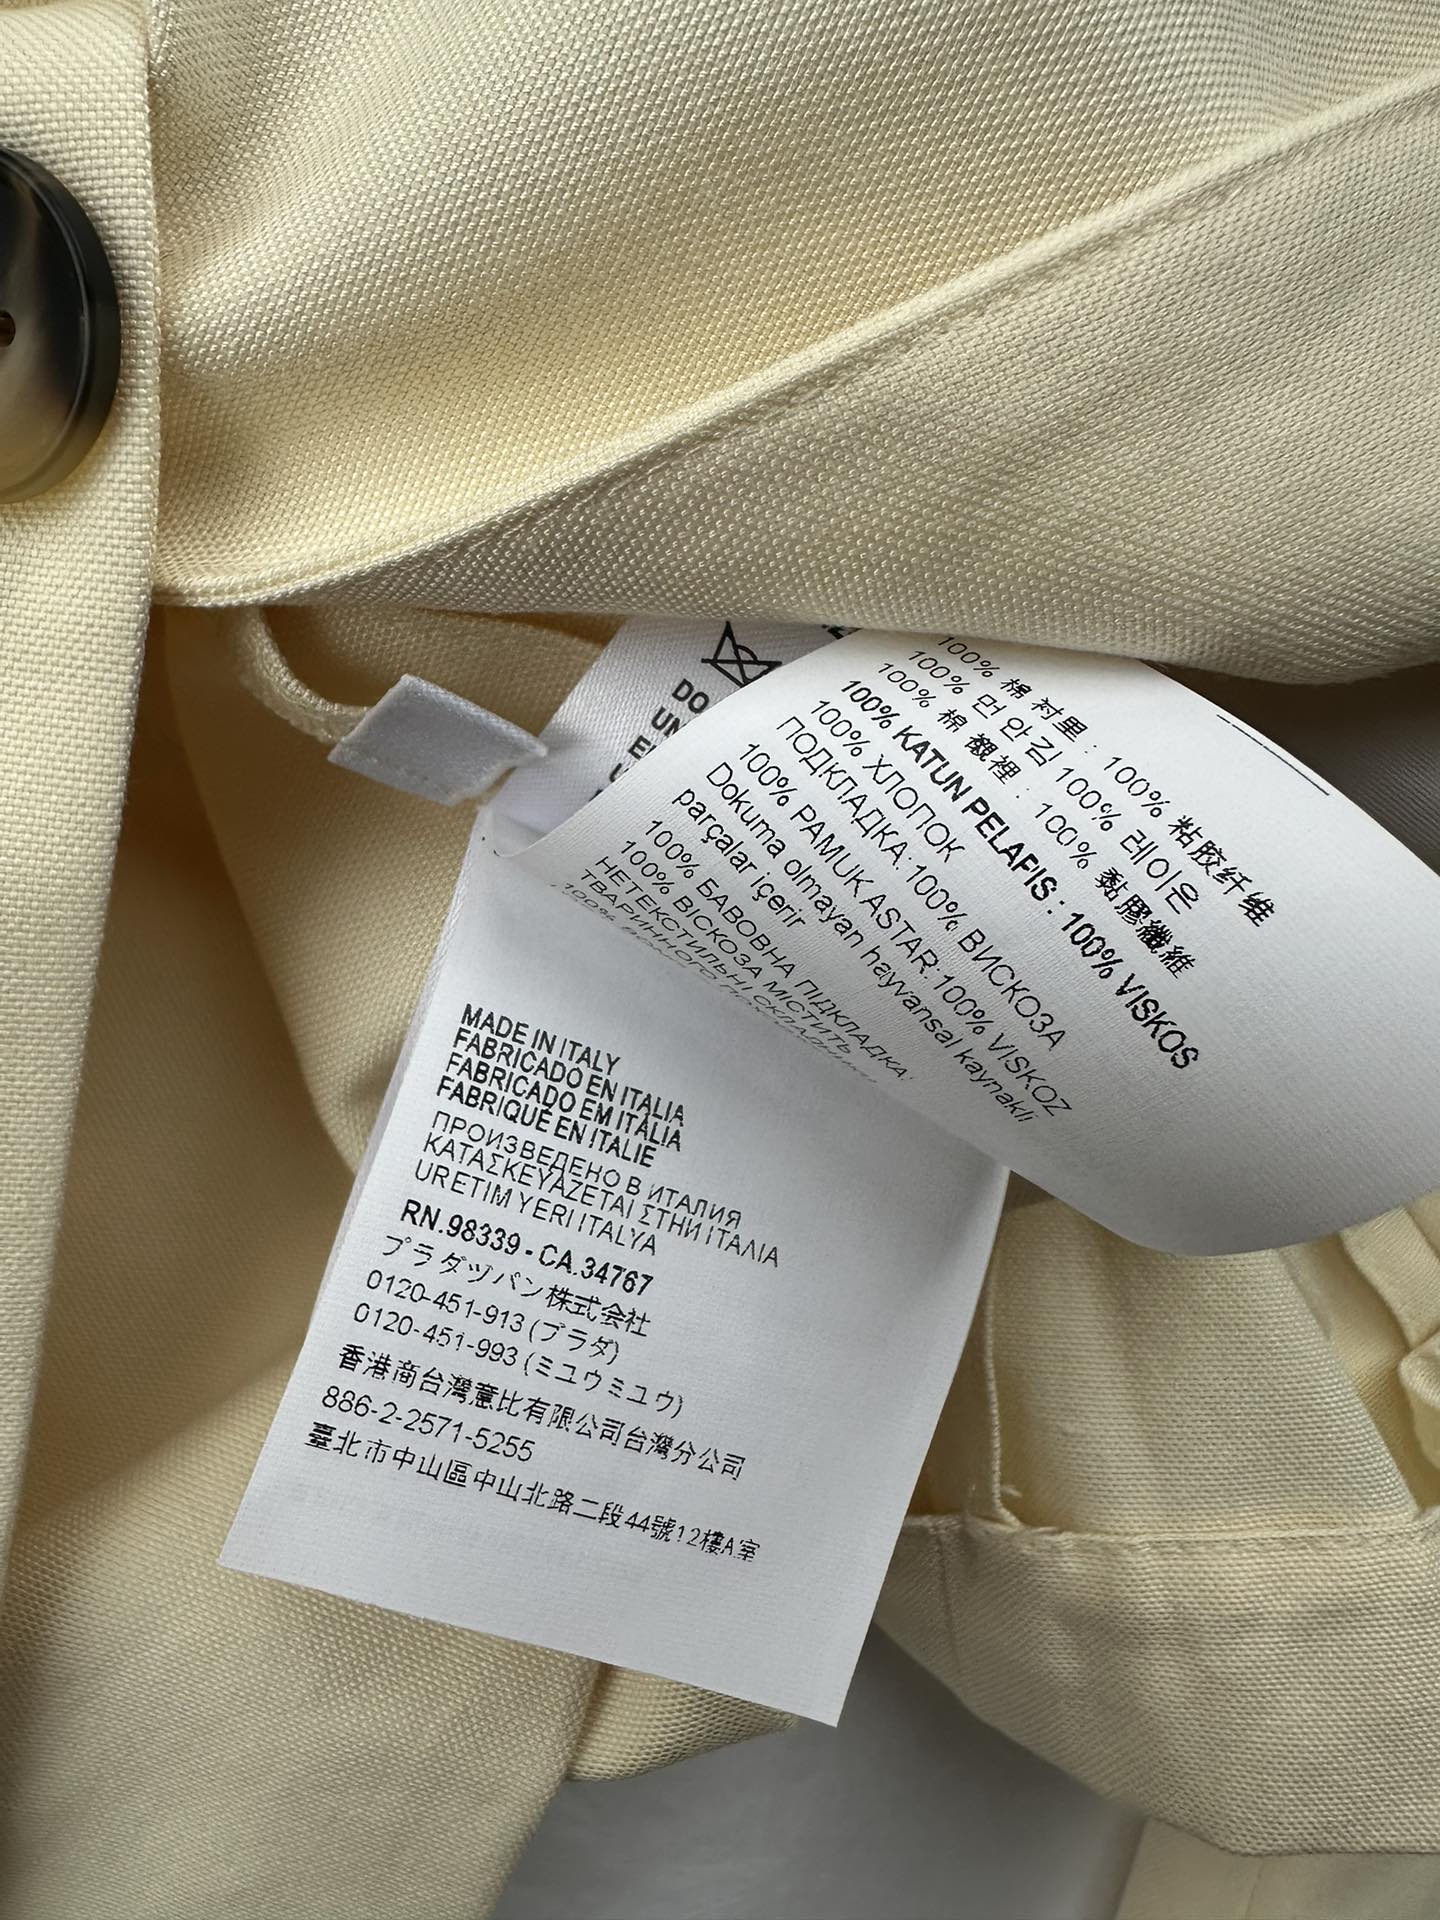 Miumi*24春夏新款单排扣白色字母西装外套出货️时尚必备单品打破传统西装刻板印象专柜同步发售高品质现